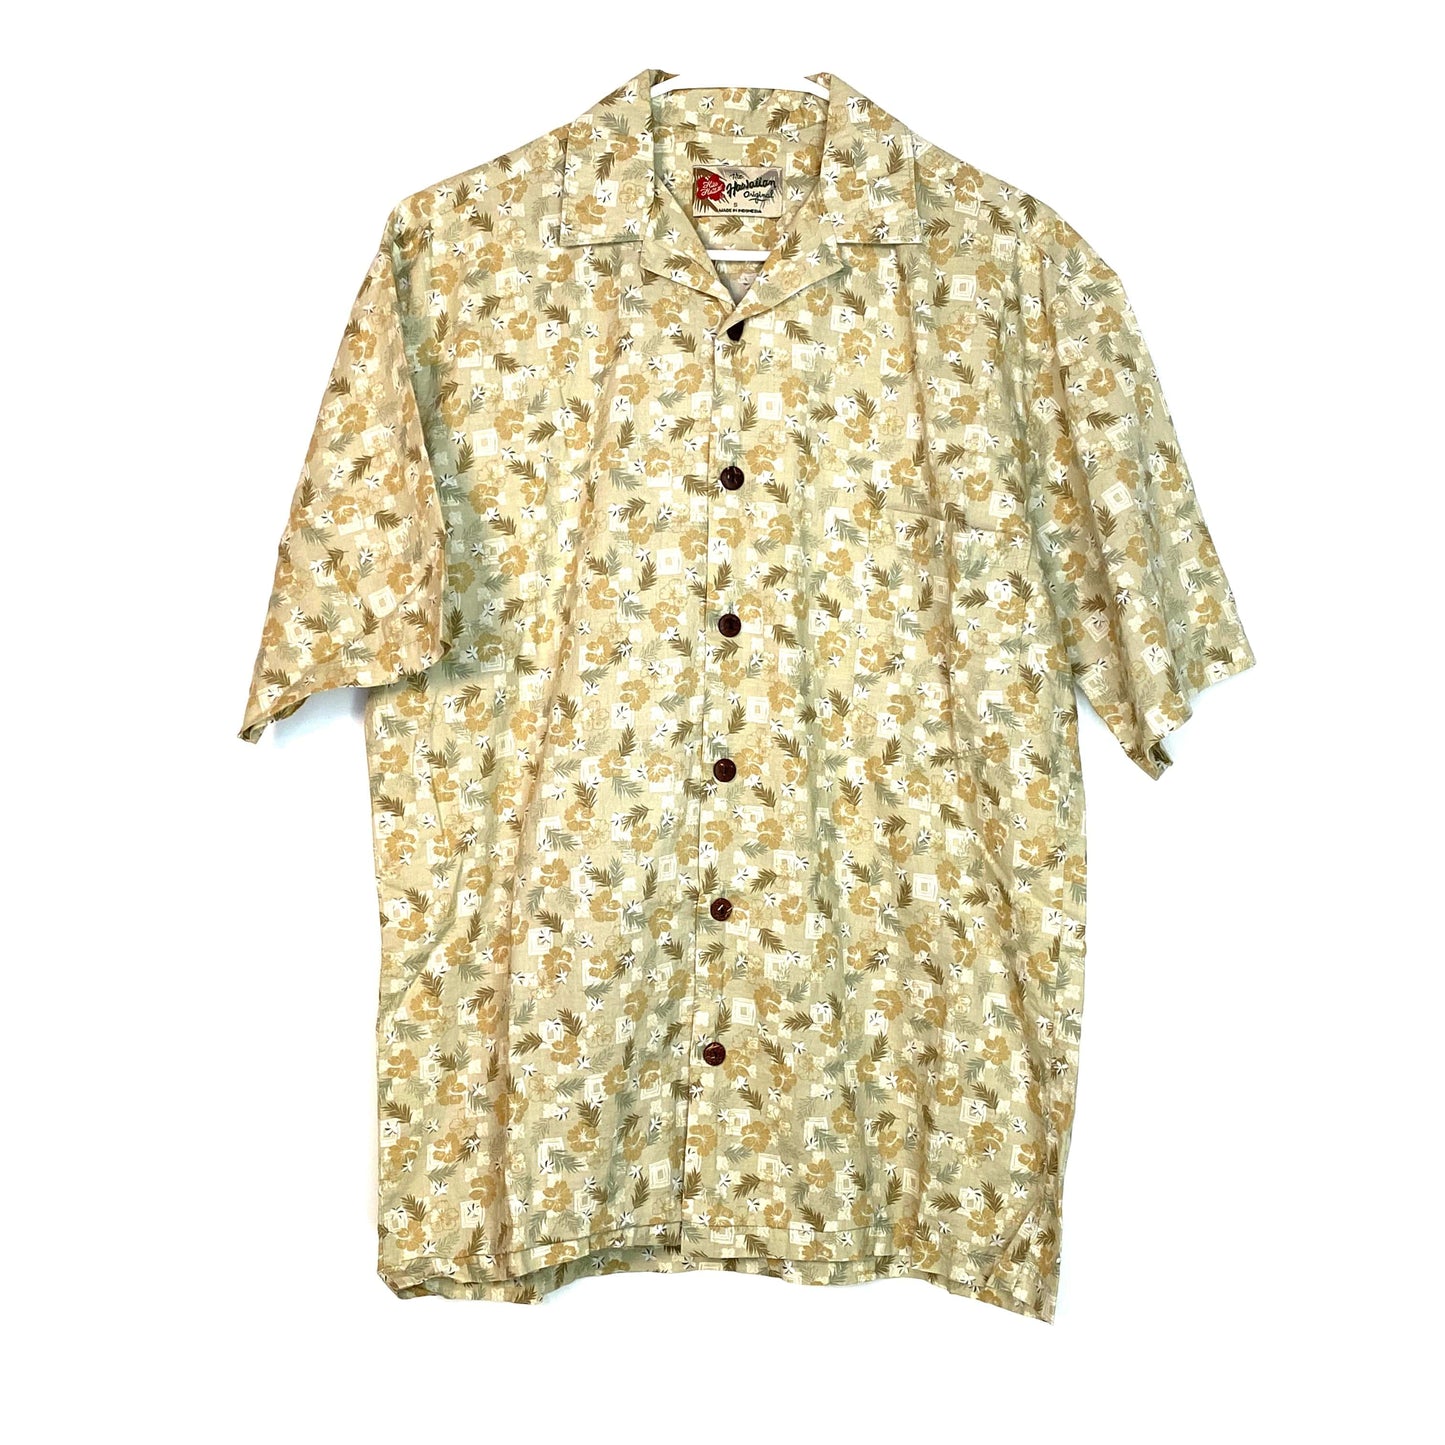 Hilo Hattie Mens Size S Beige Floral Hawaiian Button-Up Shirt S/s